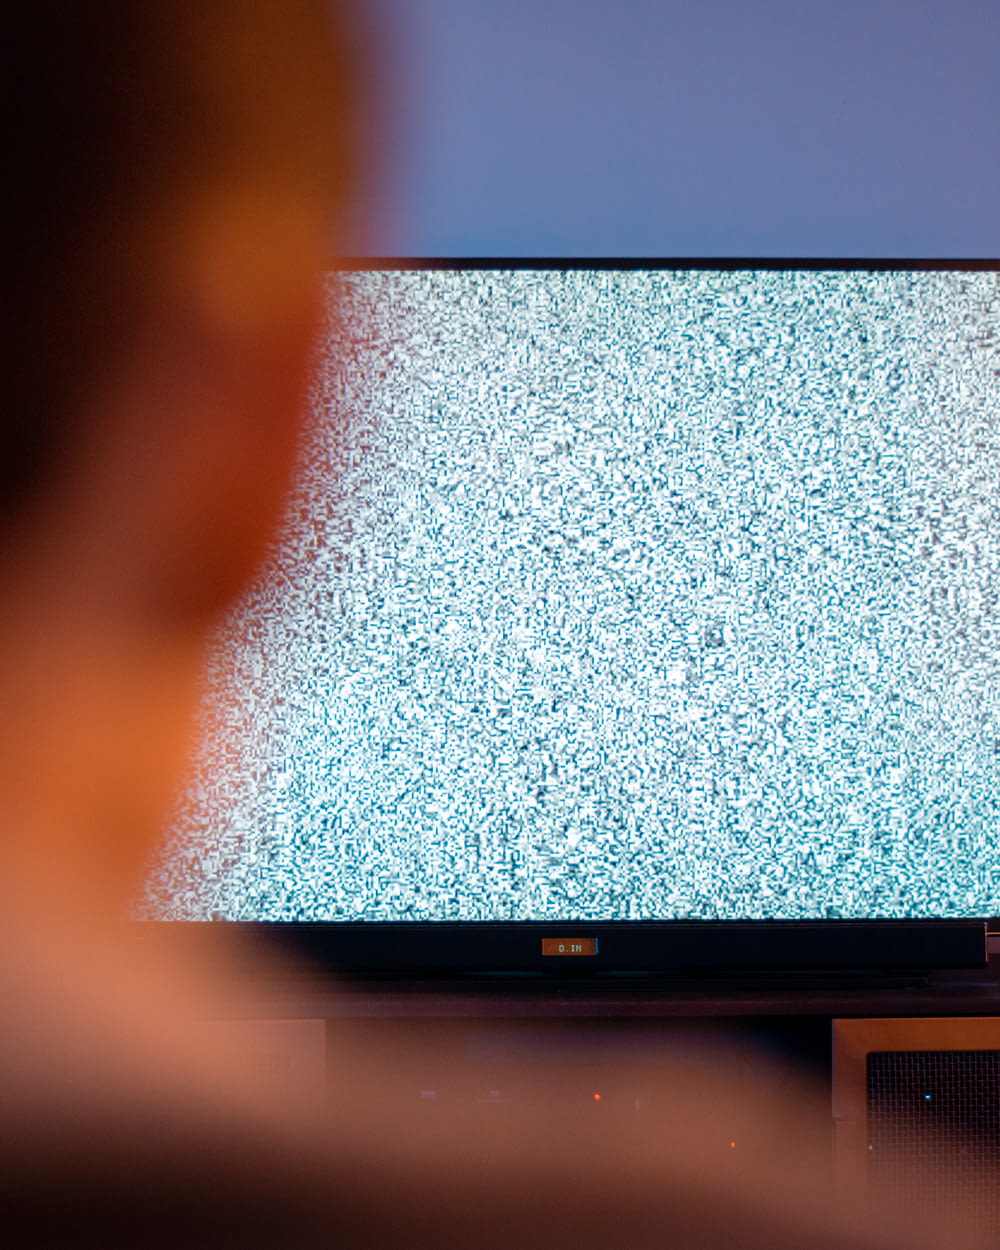 黒いフラットスクリーンテレビがオンになり、白い画面が表示される